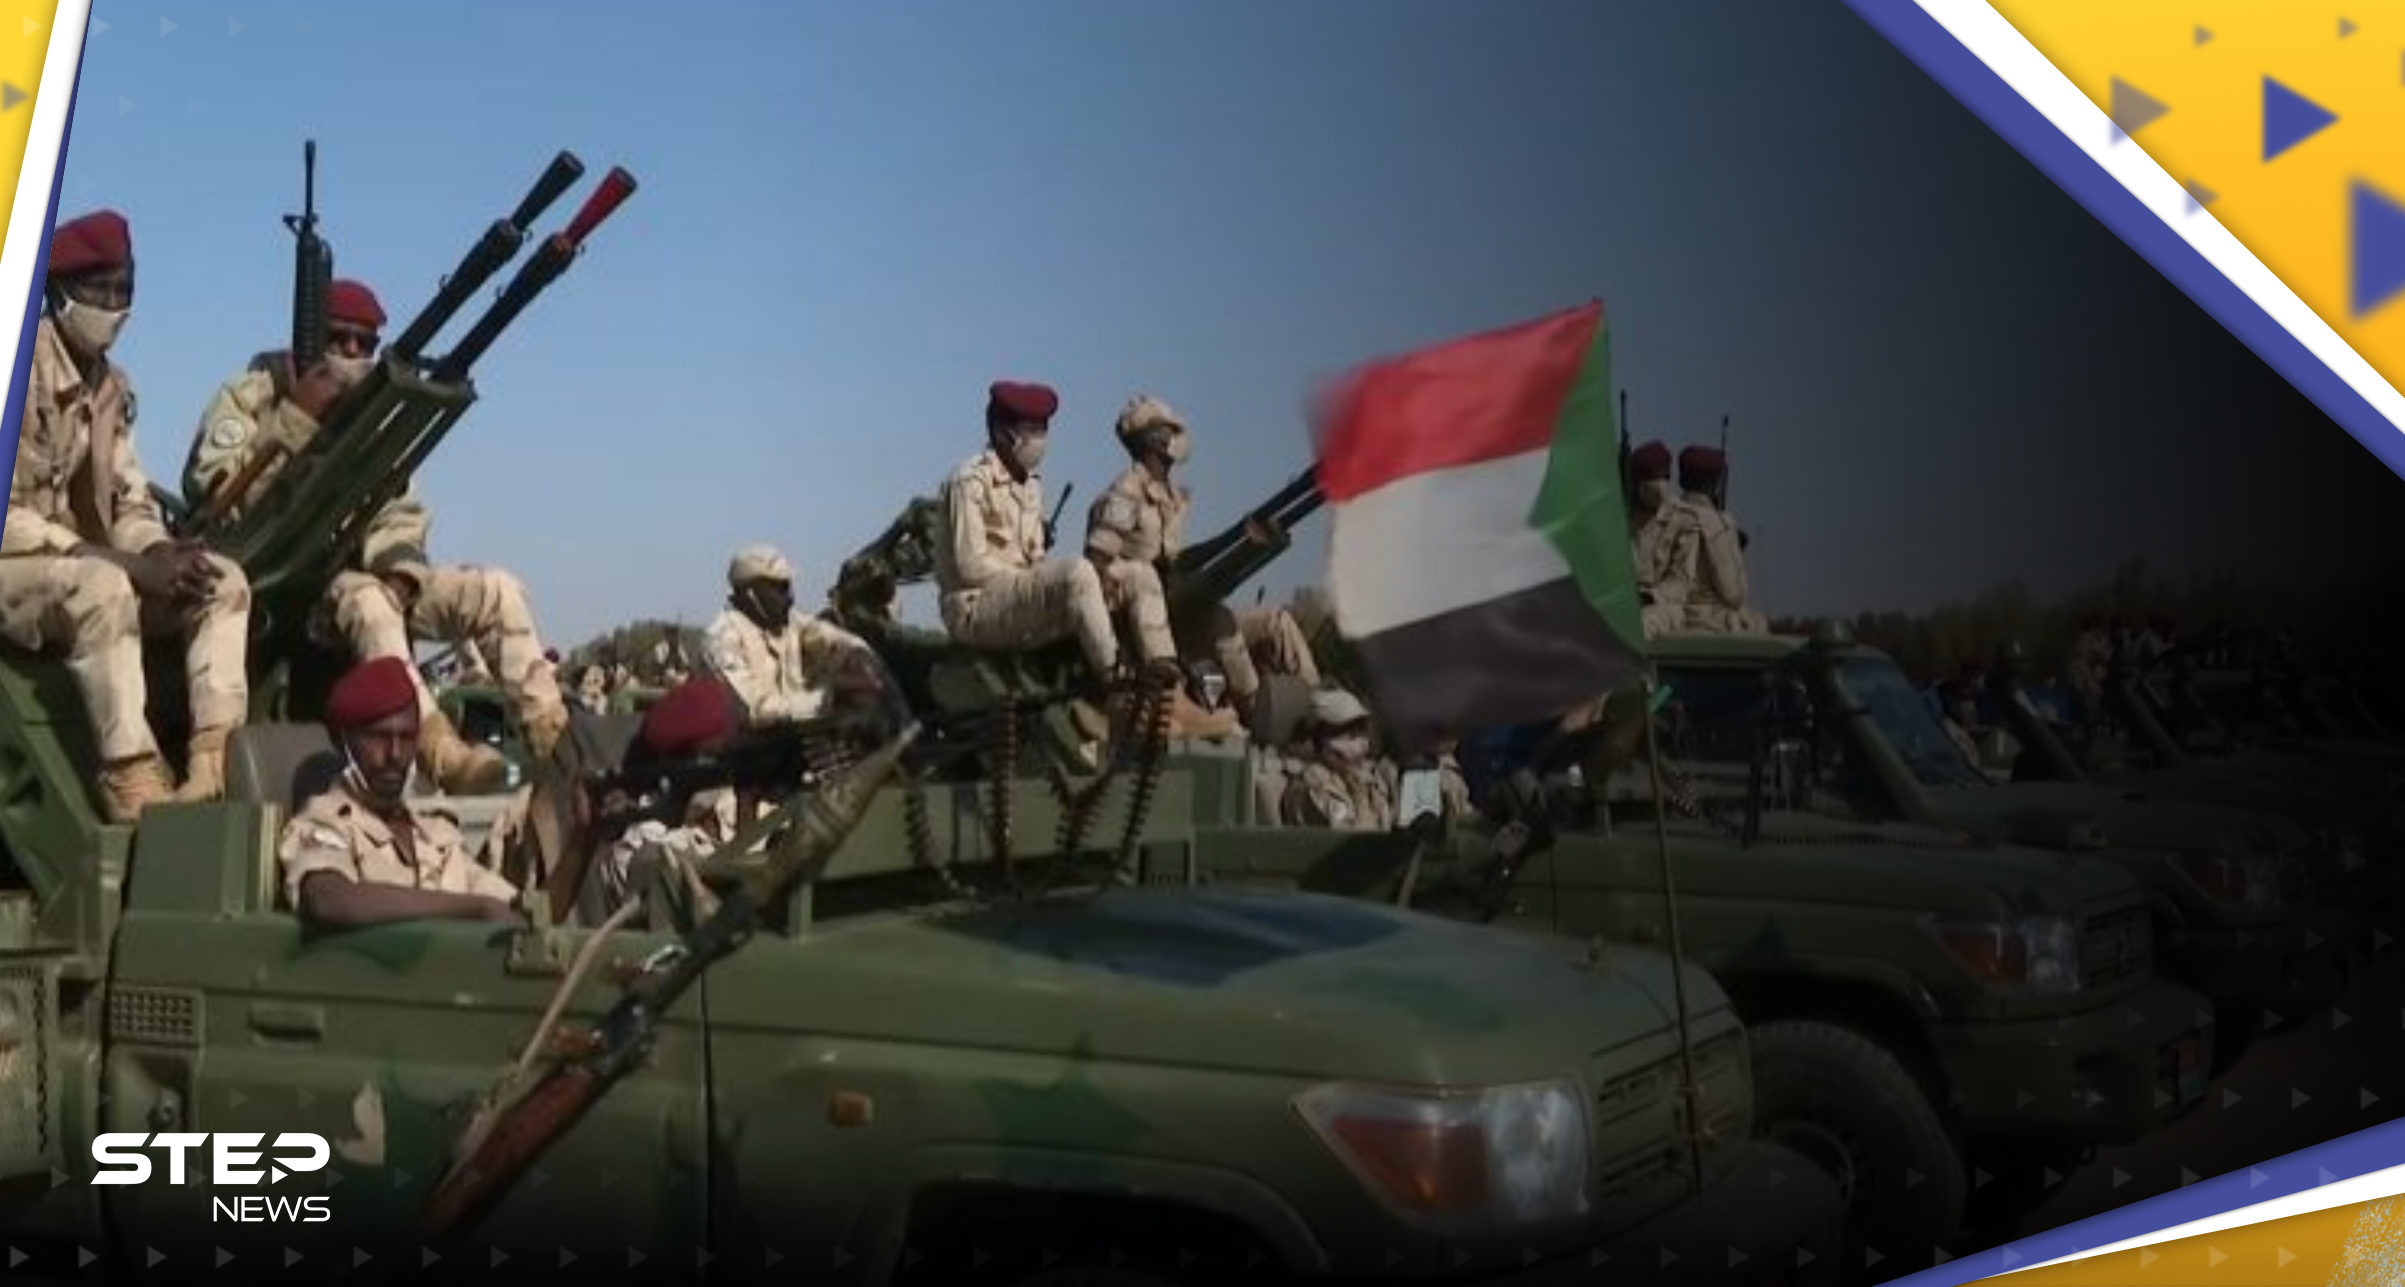 الجيش السوداني يتحدث عن "هروب" حميدتي والجامعة العربية نقعد اجتماعاً "طارئاً" 